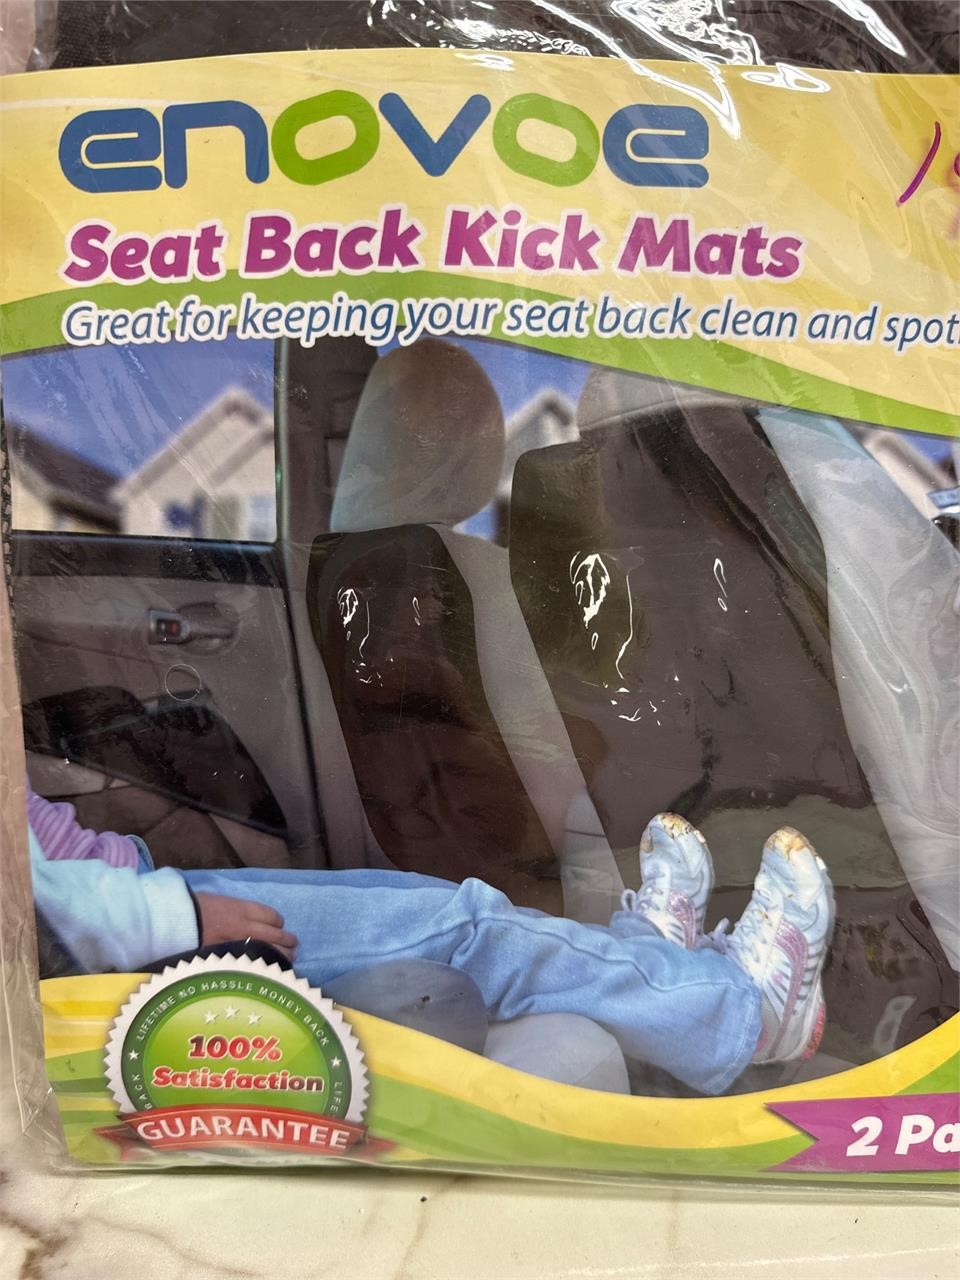 Backseat kick mats